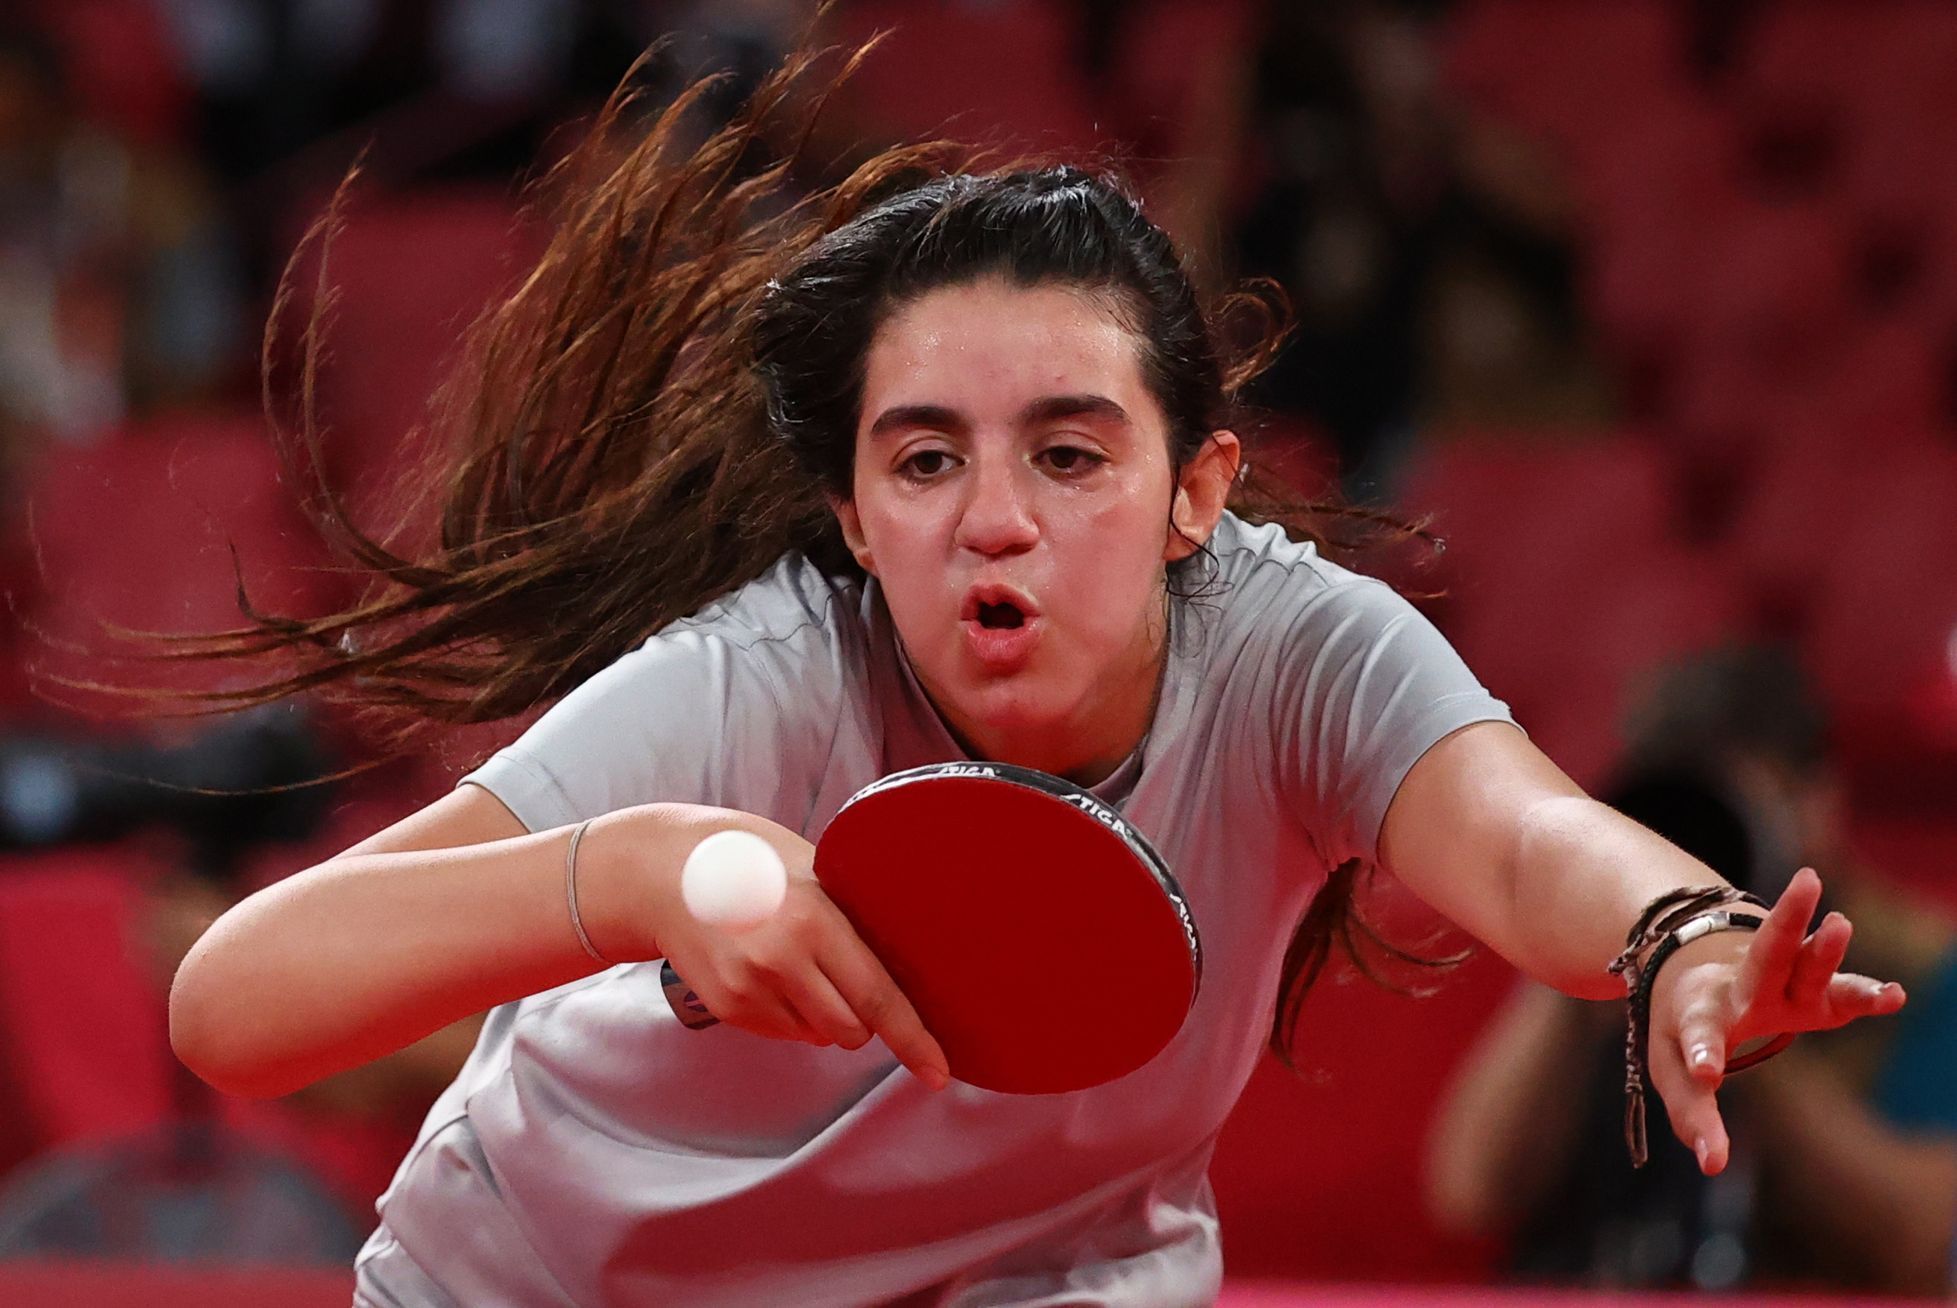 Syrská stolní tenistka Hend Zaza